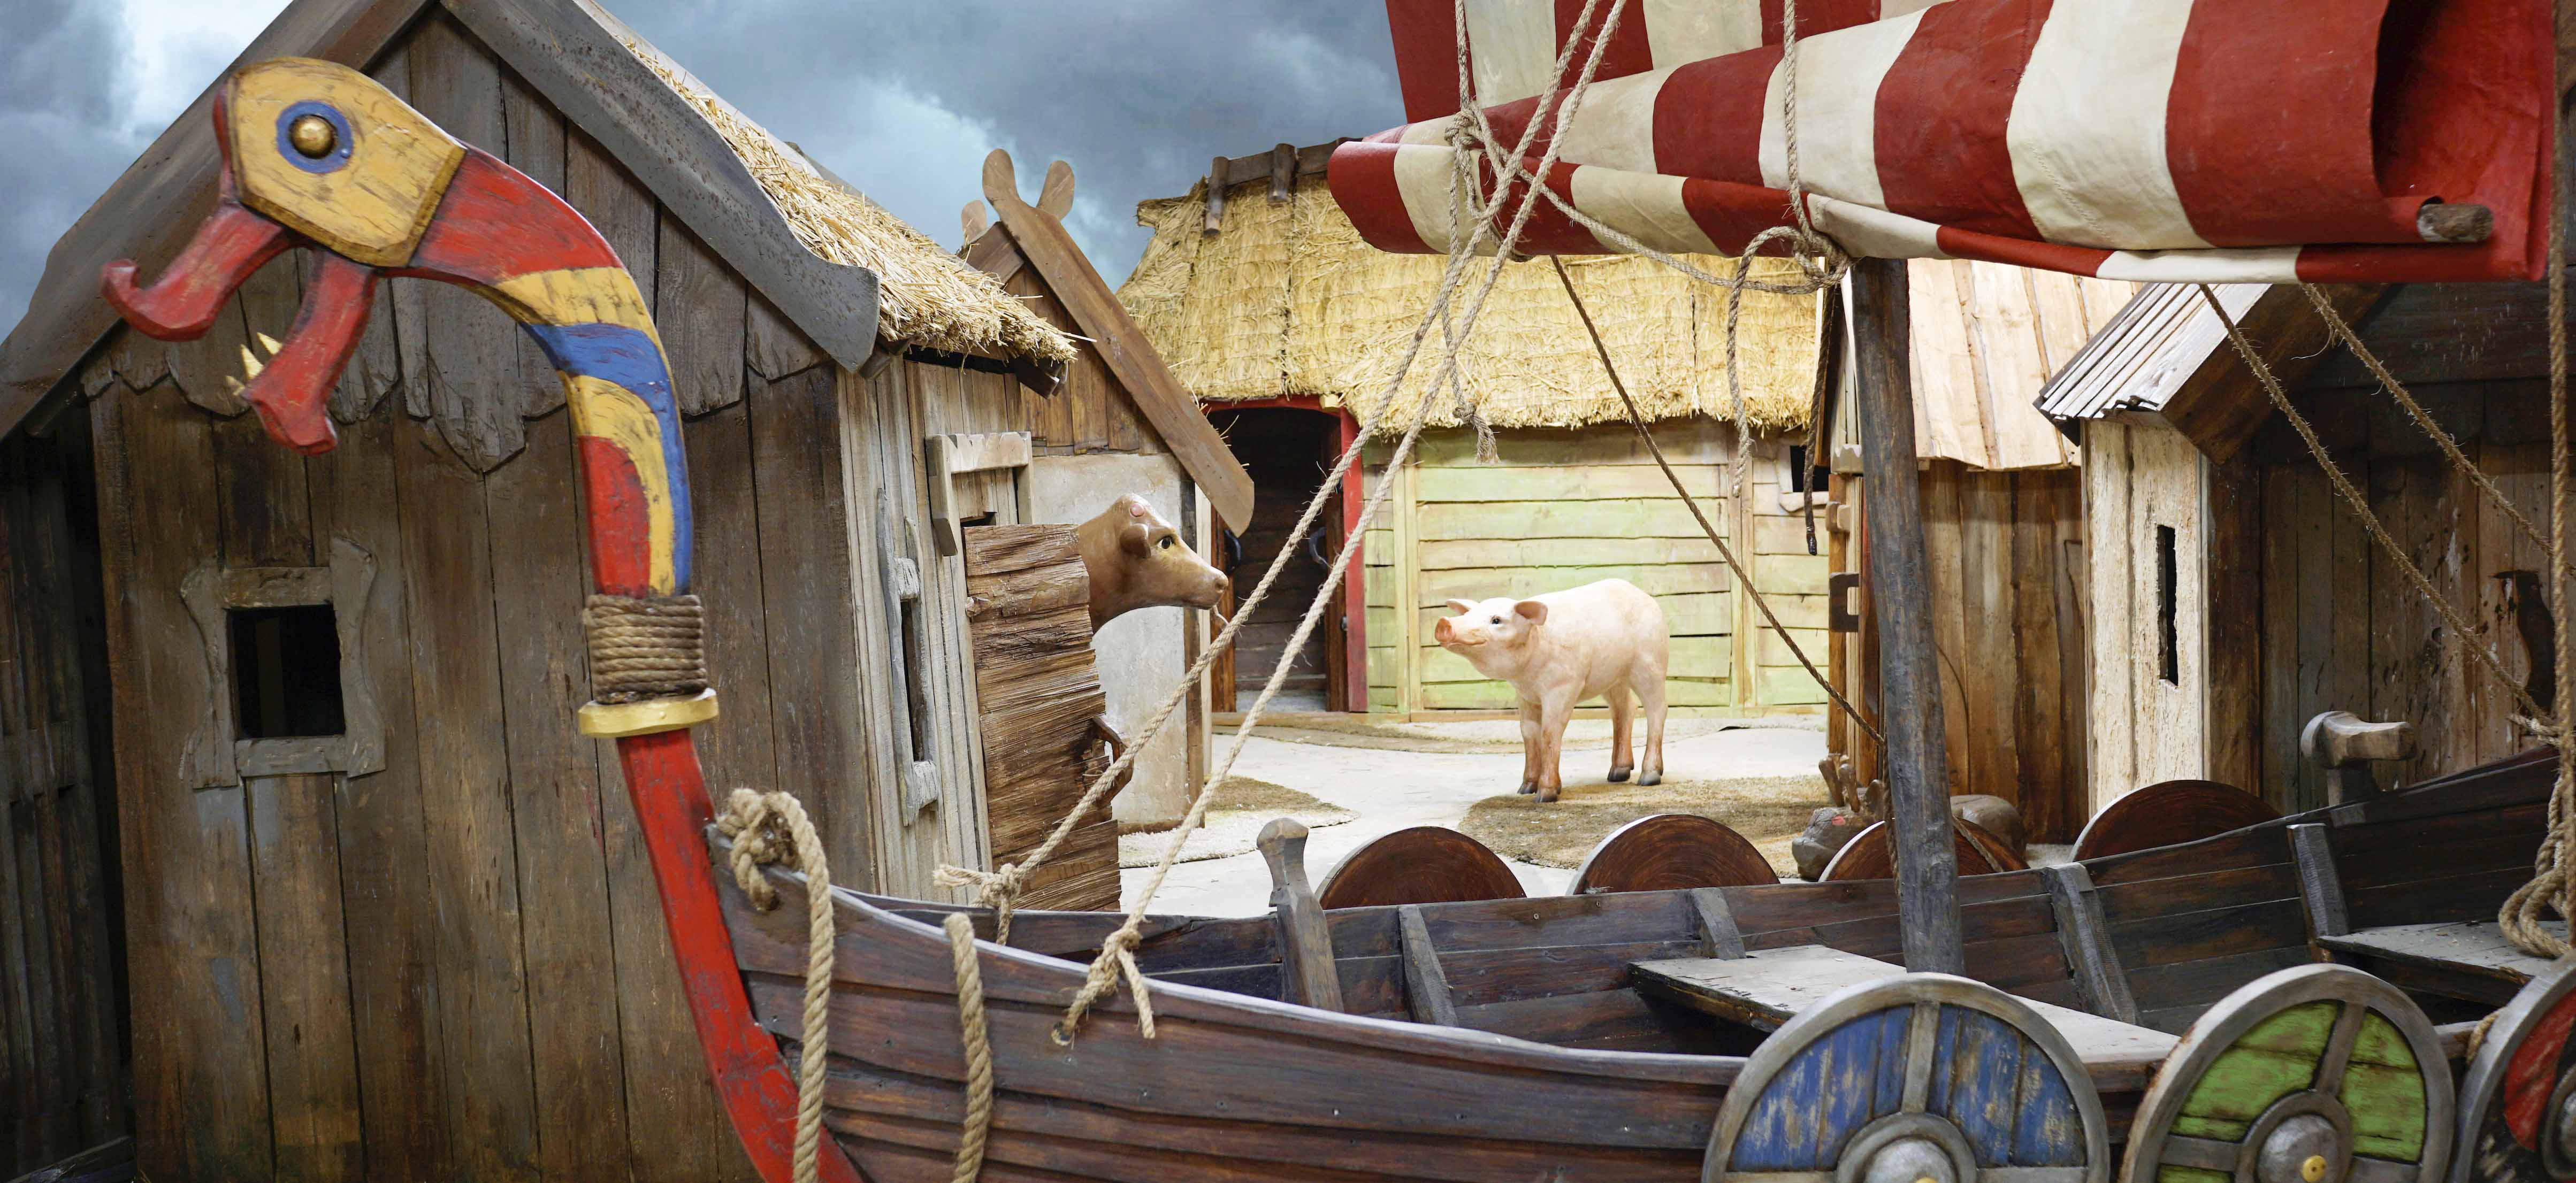 Bild på en uppbyggd utställning av en vikingaby. På bilden syns små hus med halmtak, en båt med sköldar på sidan i olika färger. En gris och en ko i mitten.